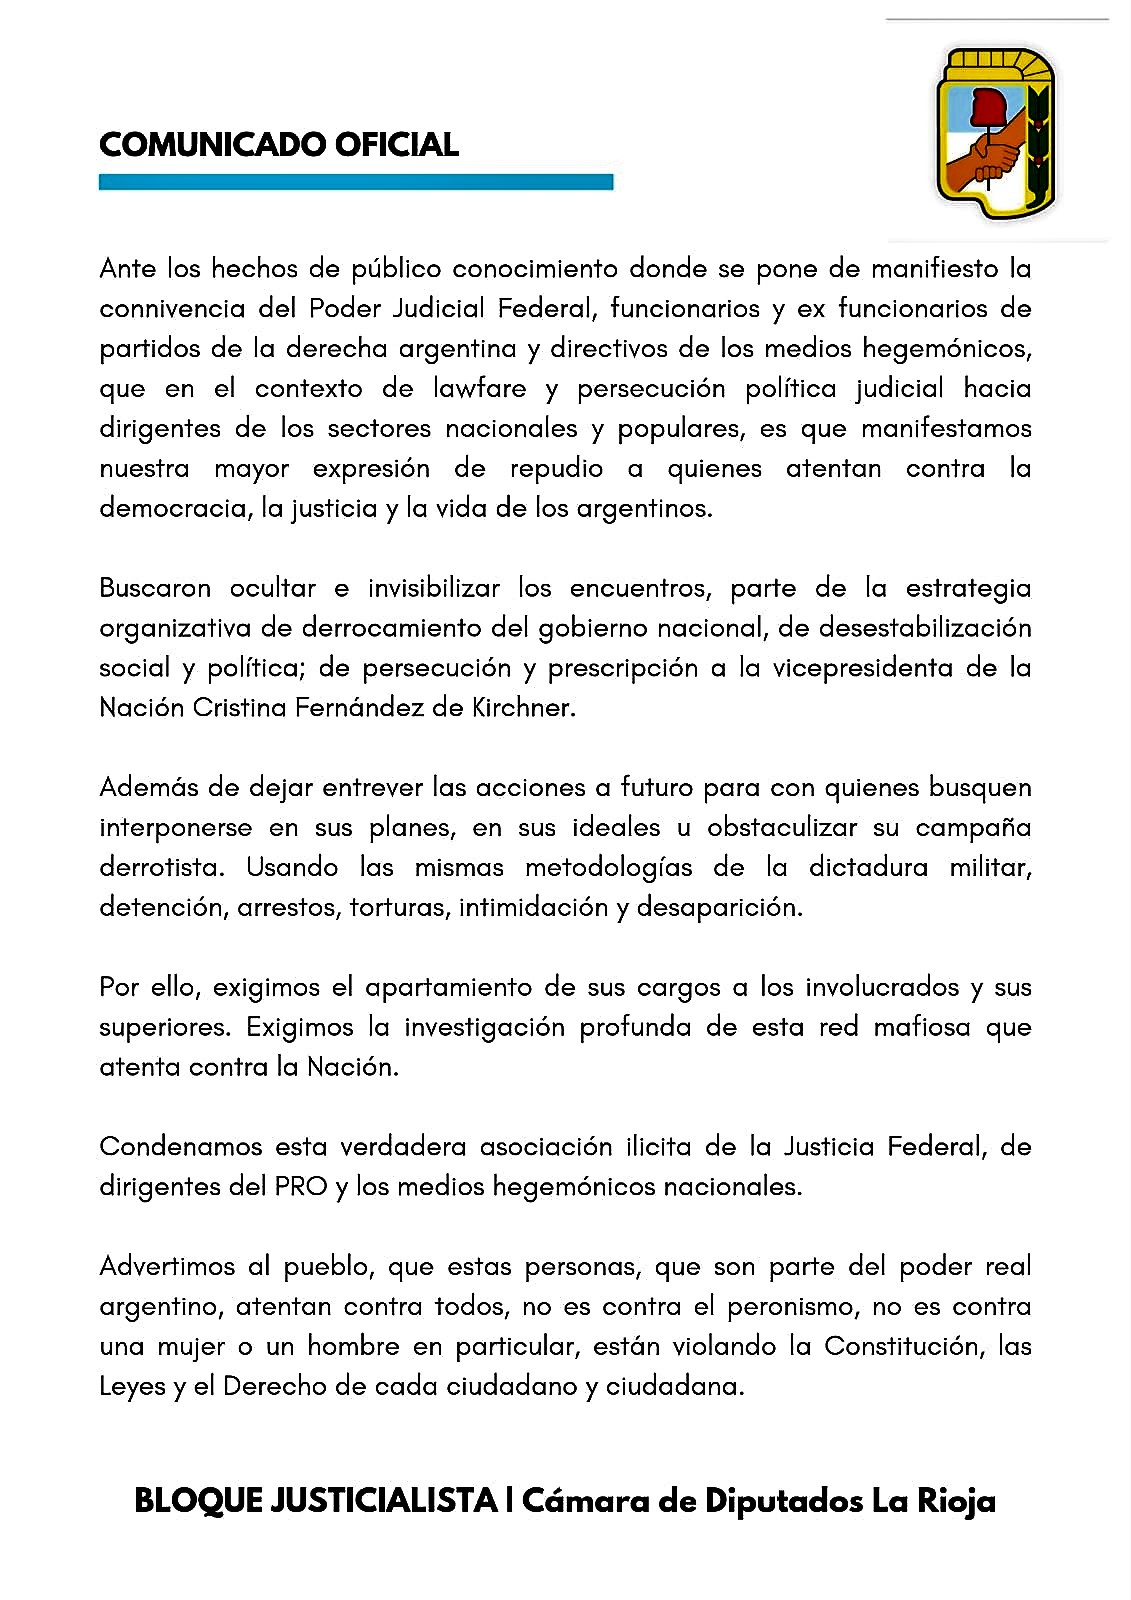 Bloque Justicialista repudió la condena a CFK: 'Están violando la Constitución'